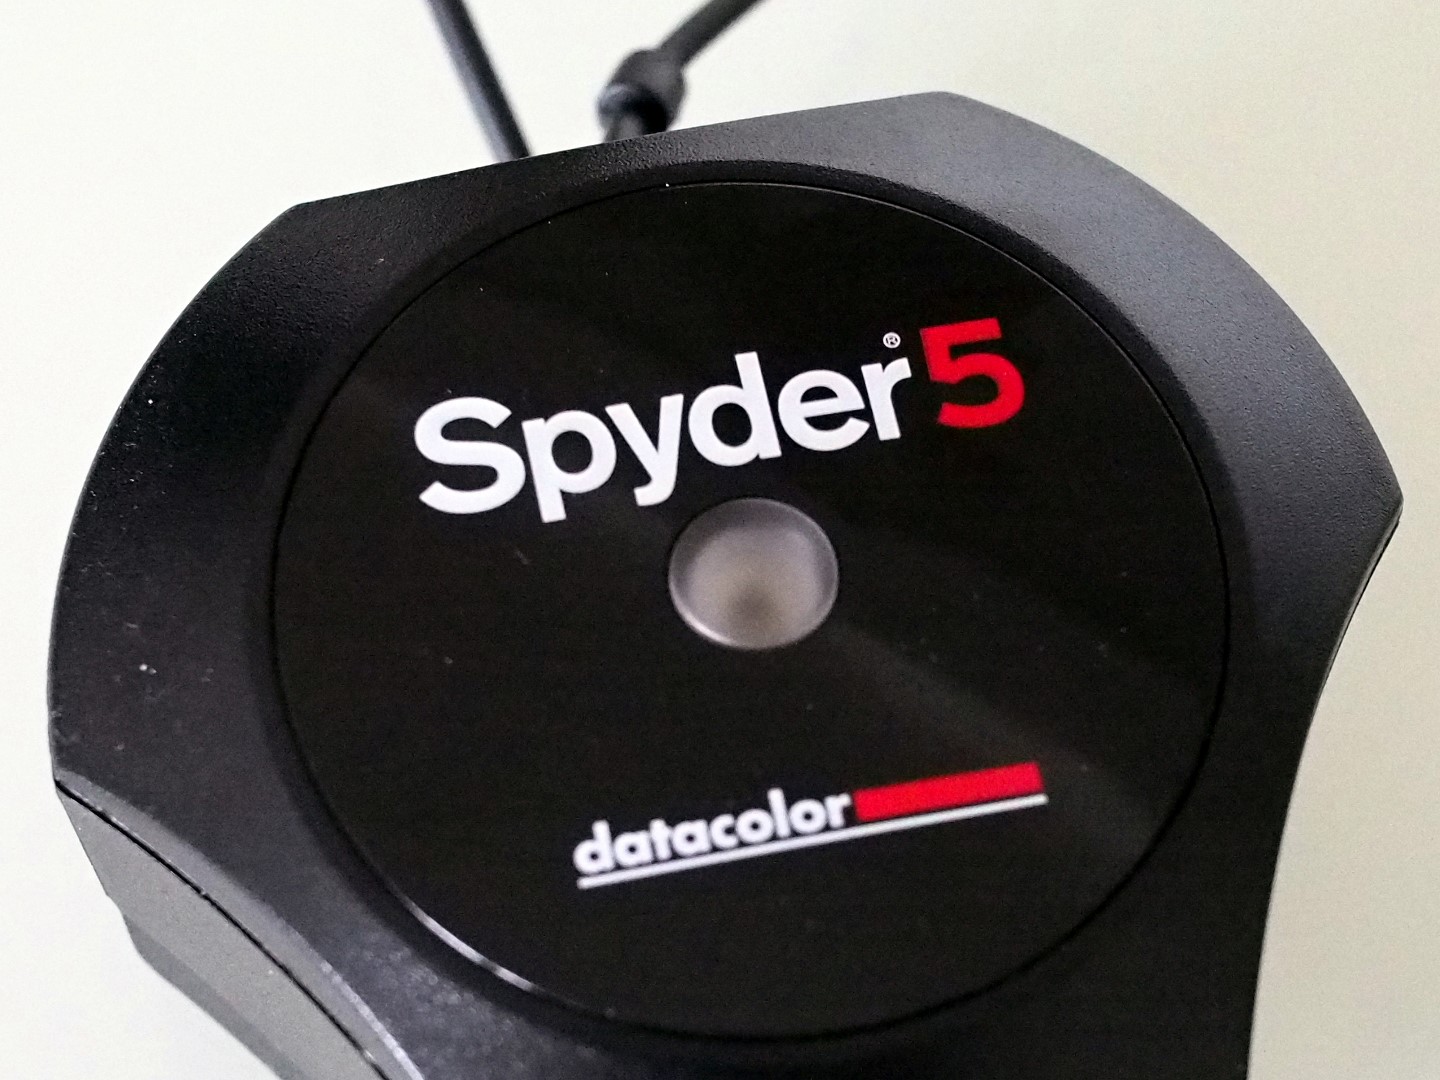 Test Spyder 5 Datacolor - la sonde de calibration pour écran est